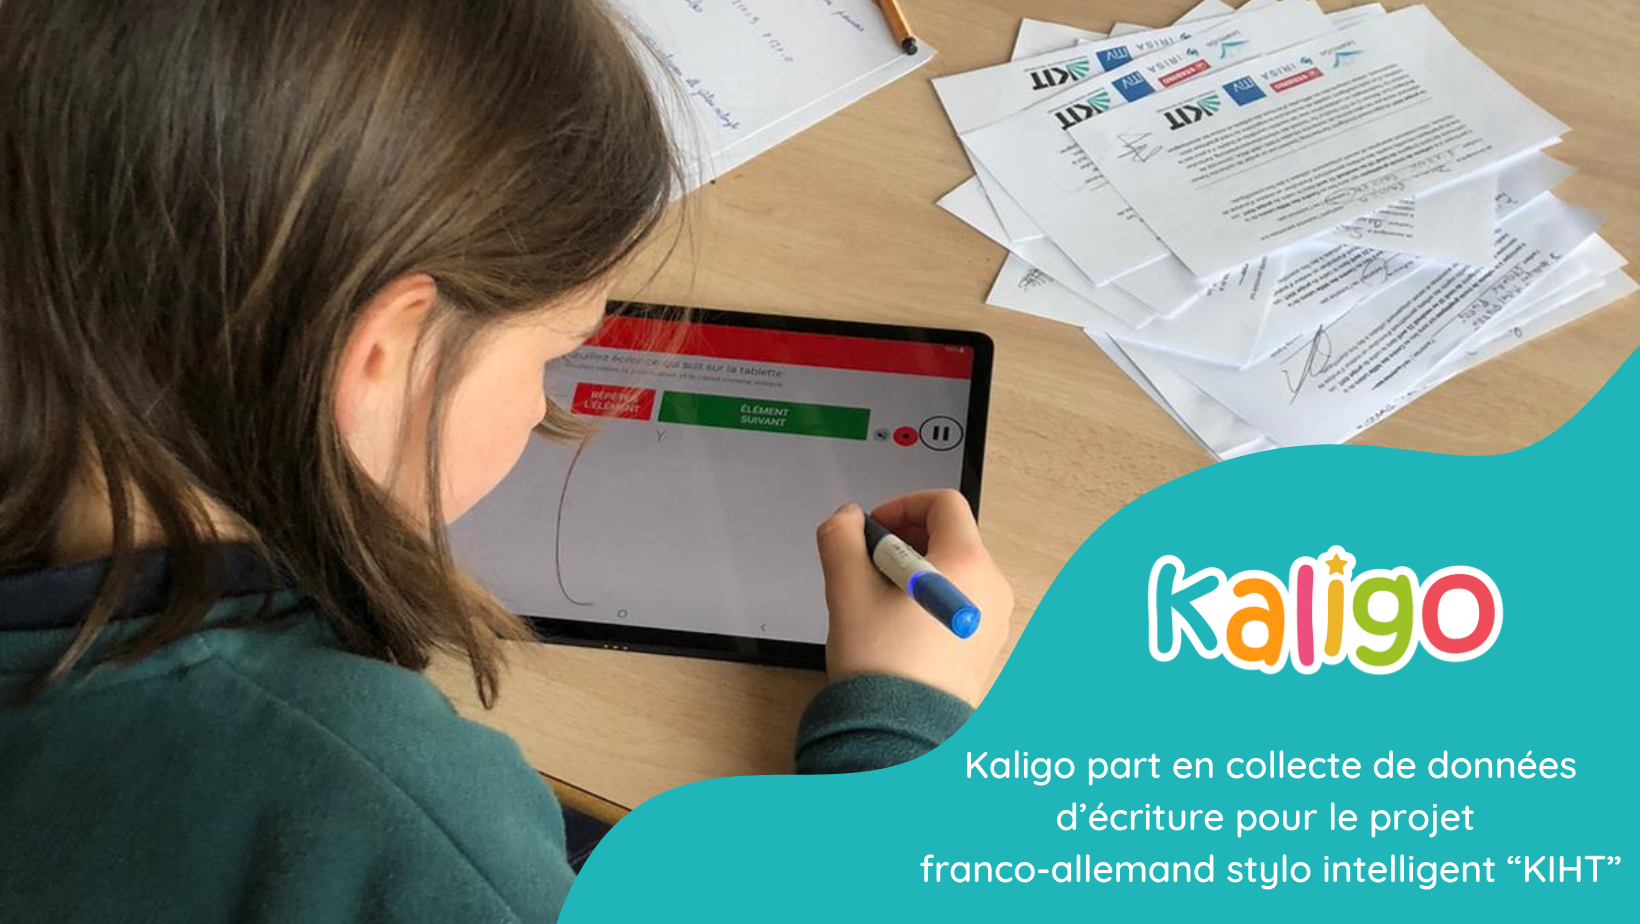 Kaligo part en collecte de données d’écriture pour le projet franco-allemand stylo intelligent “KIHT”